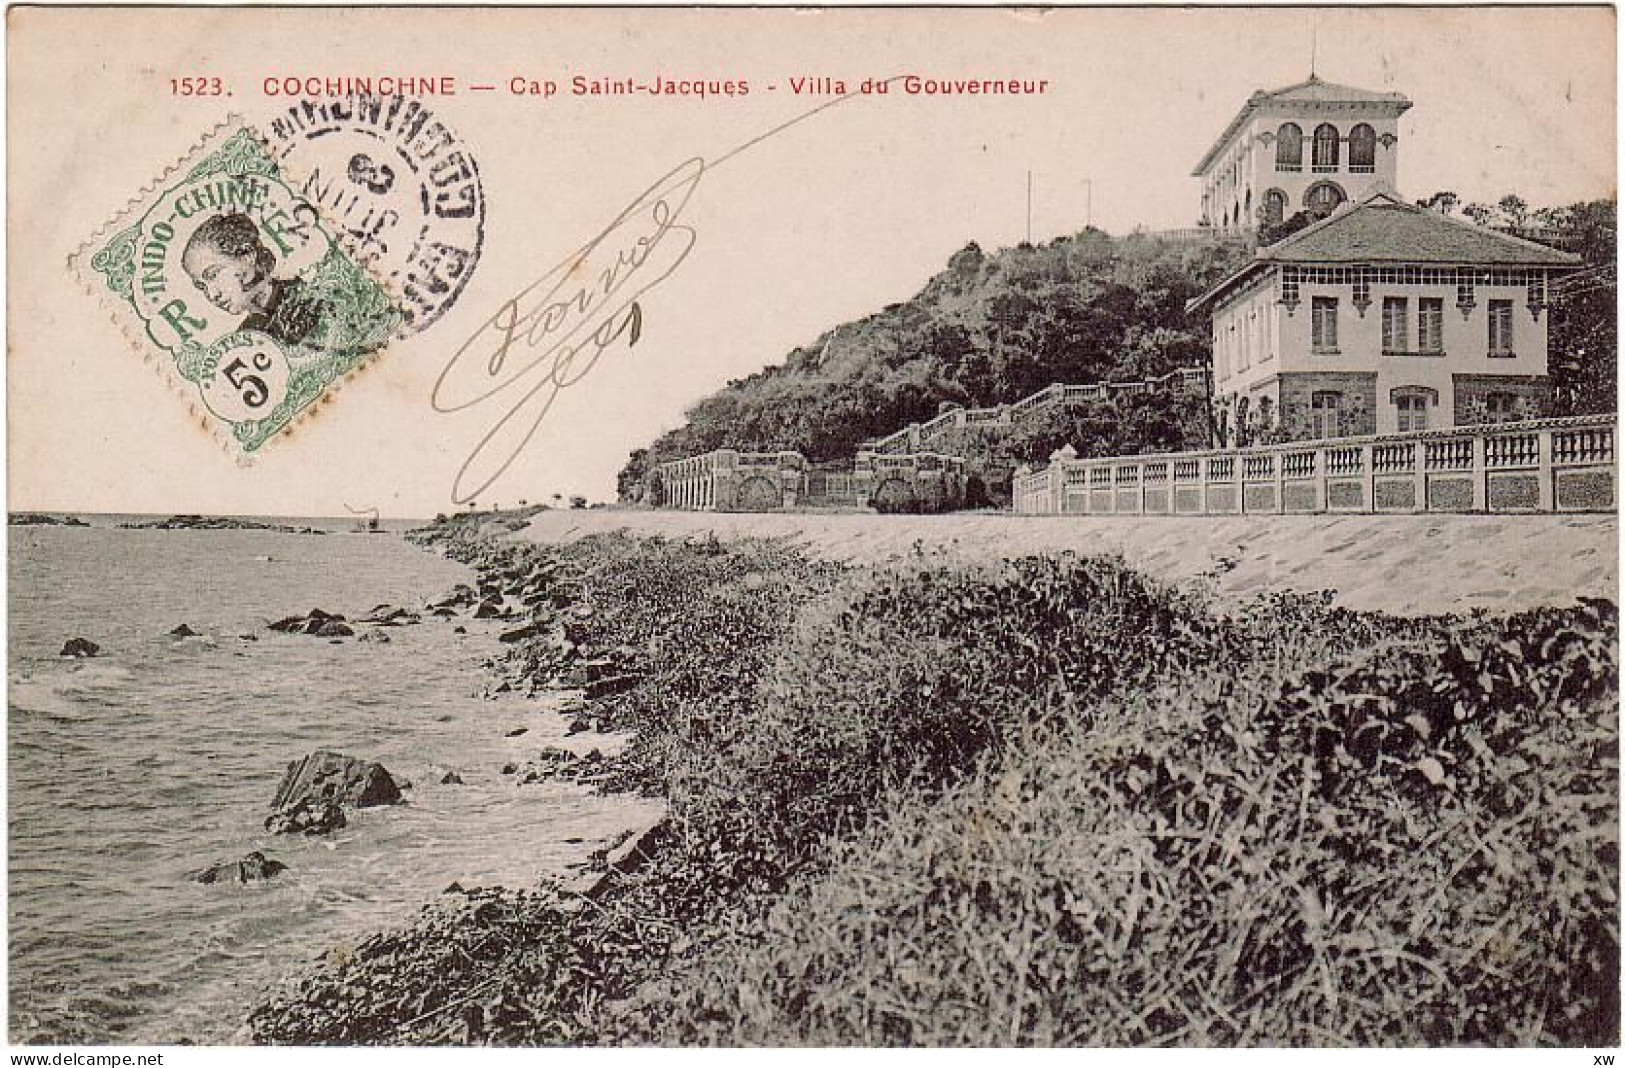 ASIE - VIÊT-NAM - Cochinchine - Cap Saint-Jacques - Villa Du Gouverneur - D 3217 - Viêt-Nam